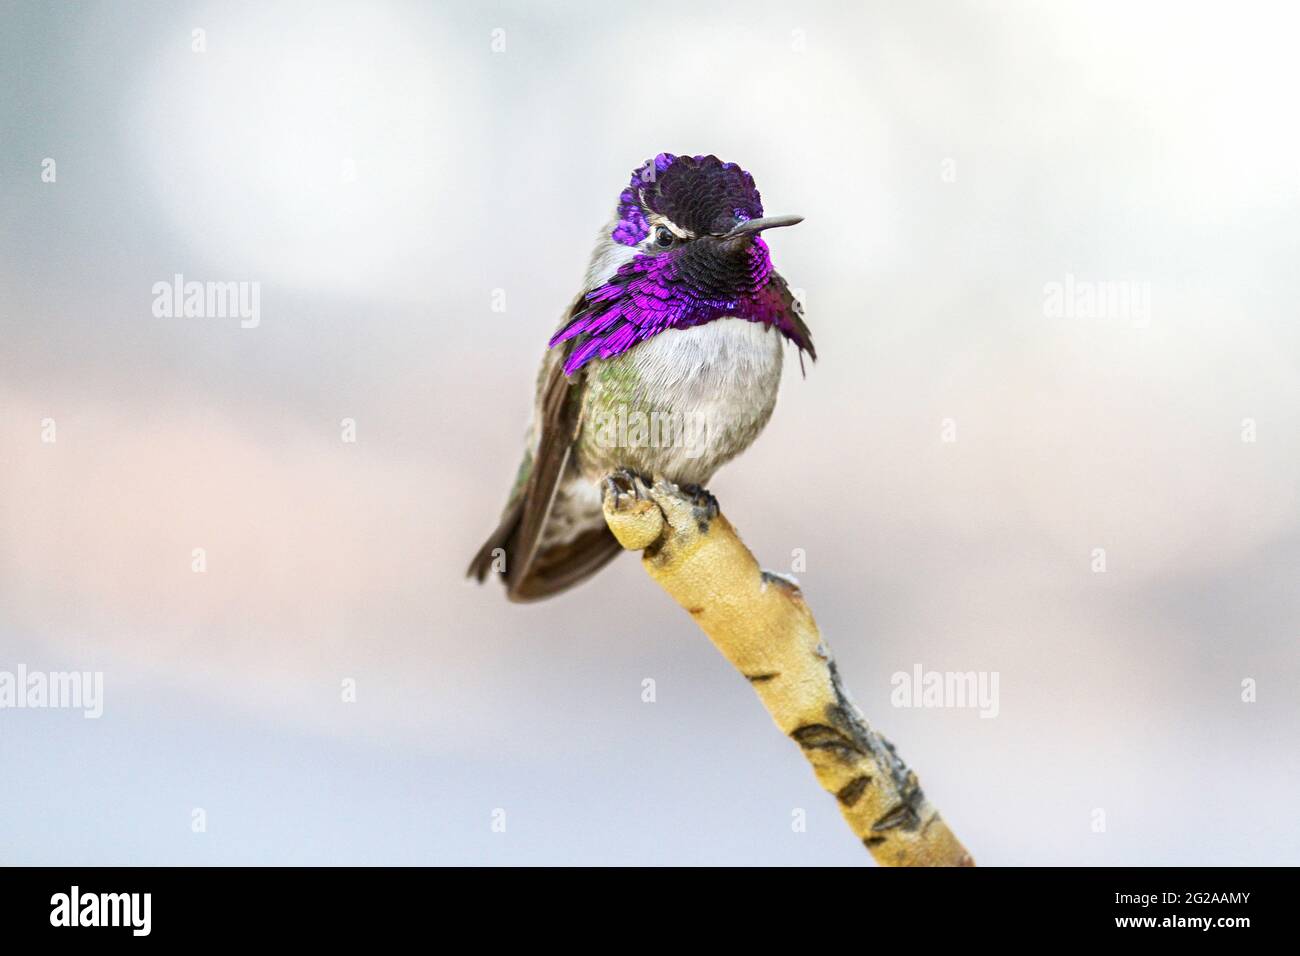 Der bunte Kolibri des männlichen Costa mit seiner leuchtend violetten Mütze und dem Gorget steht auf der Spitze eines einzelnen Astes und blickt auf die Kamera. Stockfoto